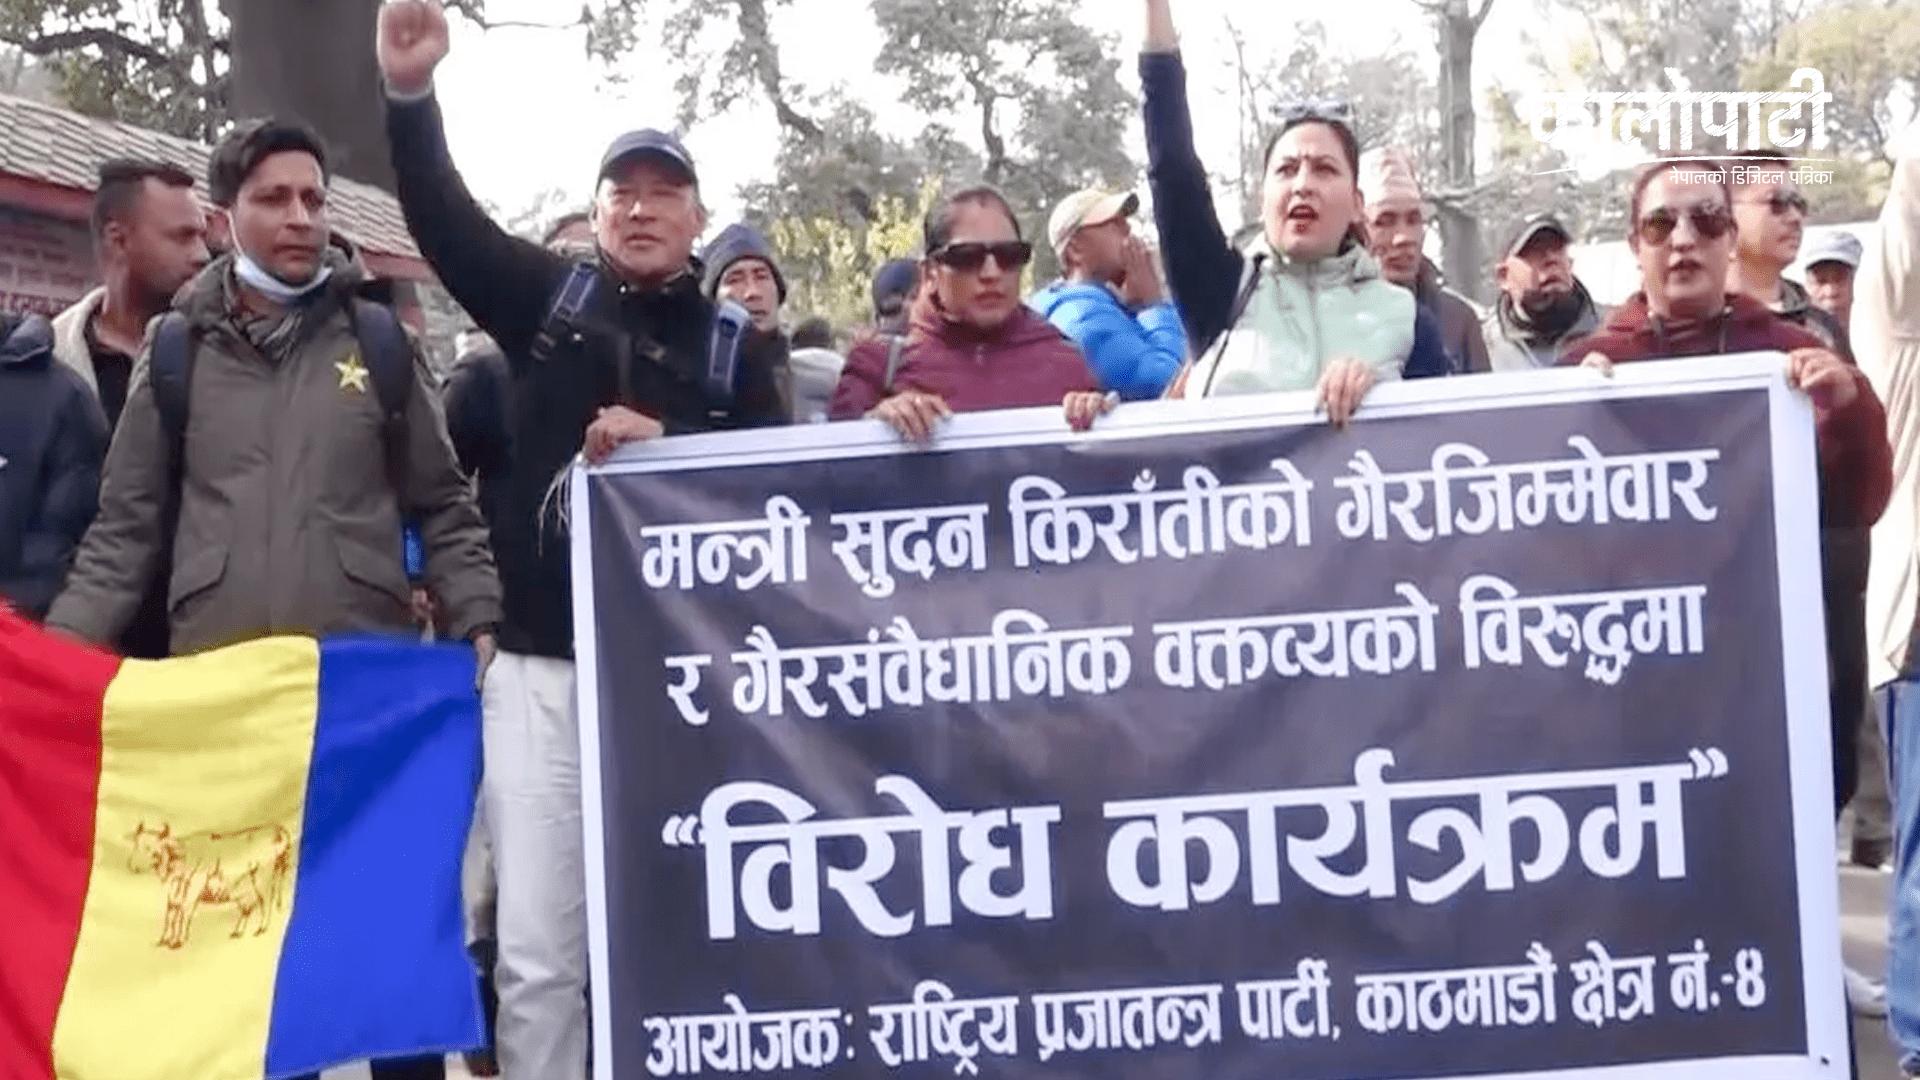 मन्त्री किरातीको राजीनामा माग गर्दै काठमाडौँको गौशालामा राप्रपाको प्रदर्शन